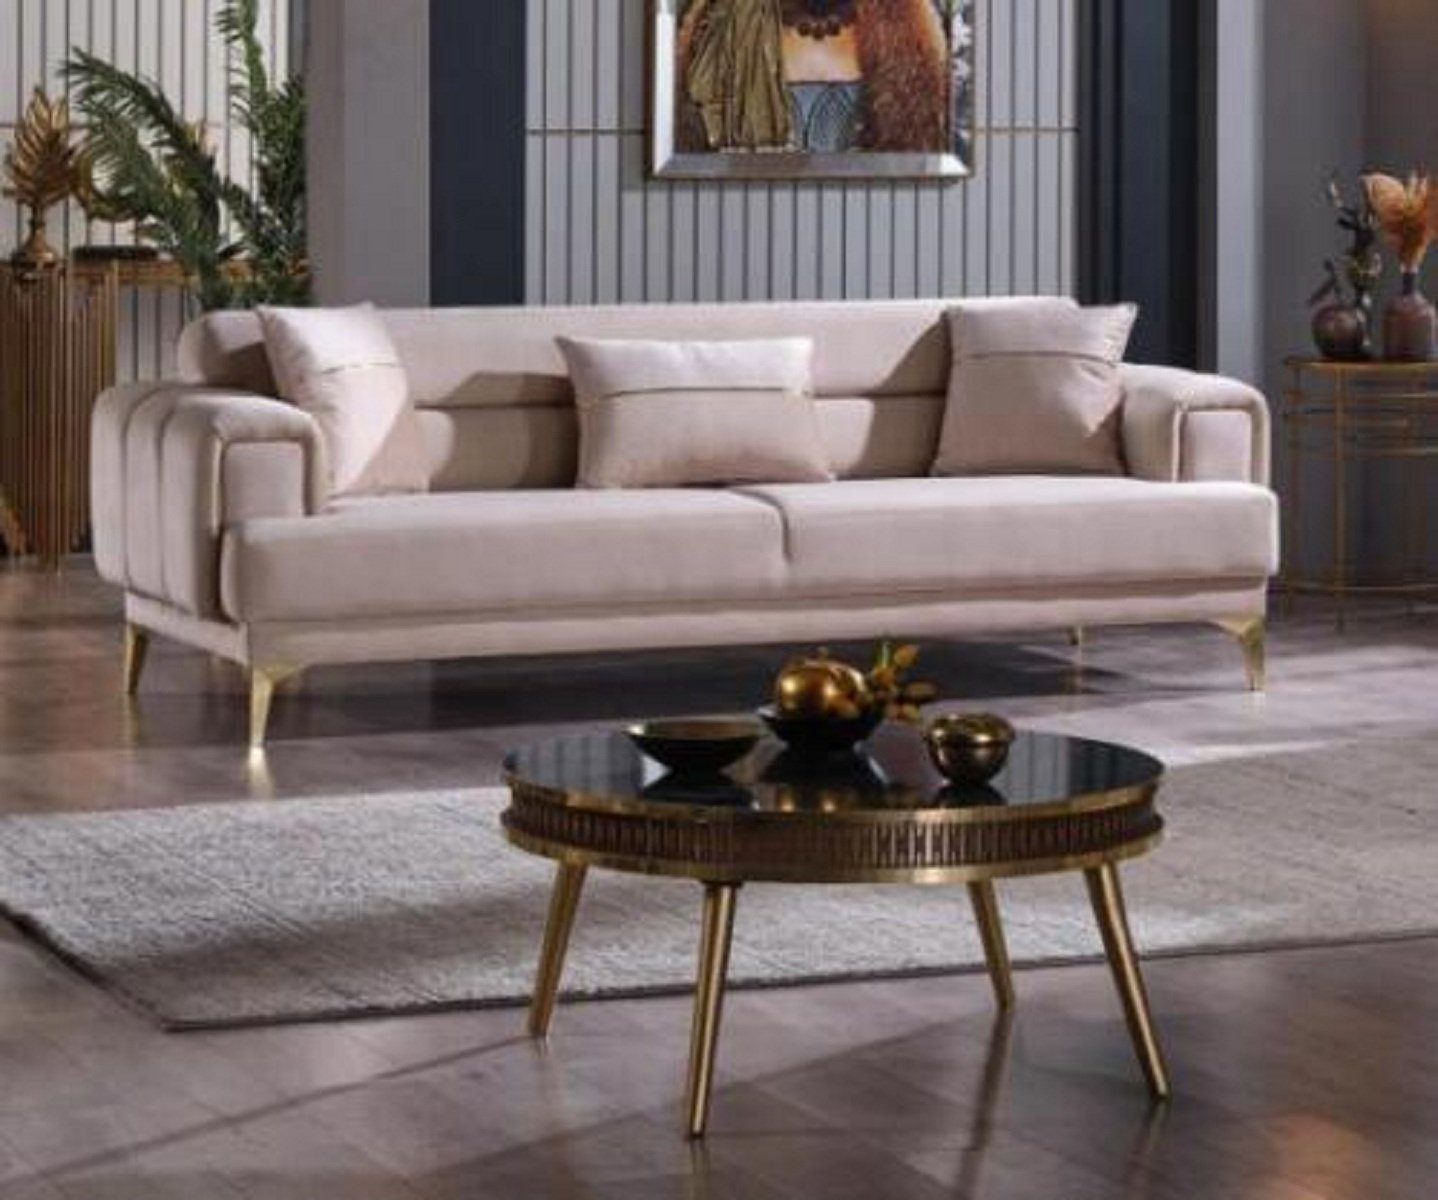 JVmoebel 3-Sitzer Samt Luxussofa 3-Sitzer Couch Designer Sitz Couch, 1 Teile, Made in Europa